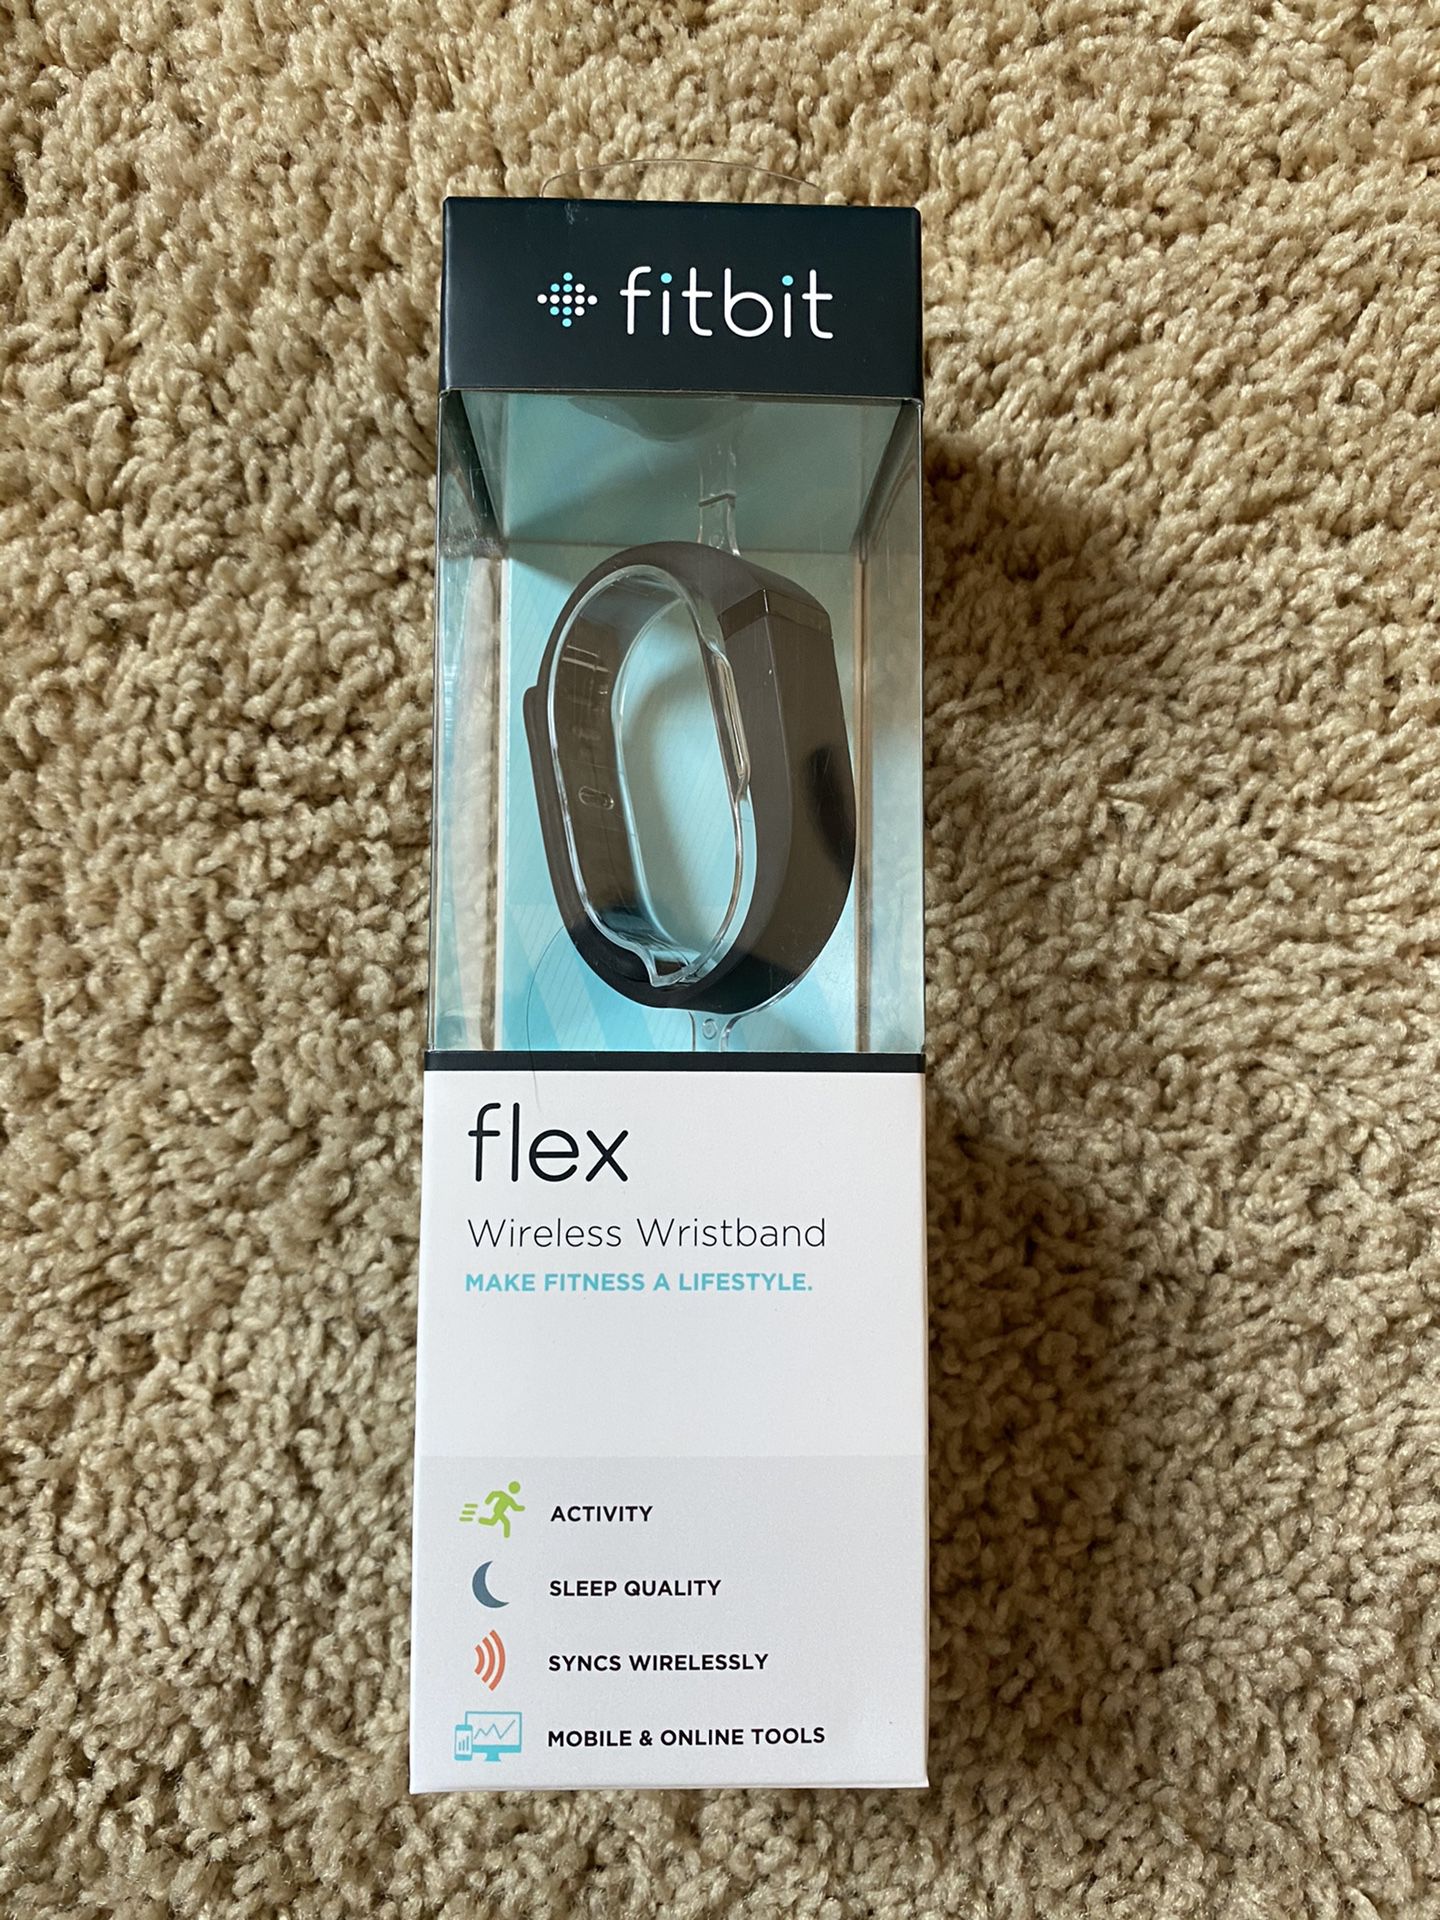 BRAND NEW Fit Bit Flex Wireless Wristband (SEALED) Retails $108